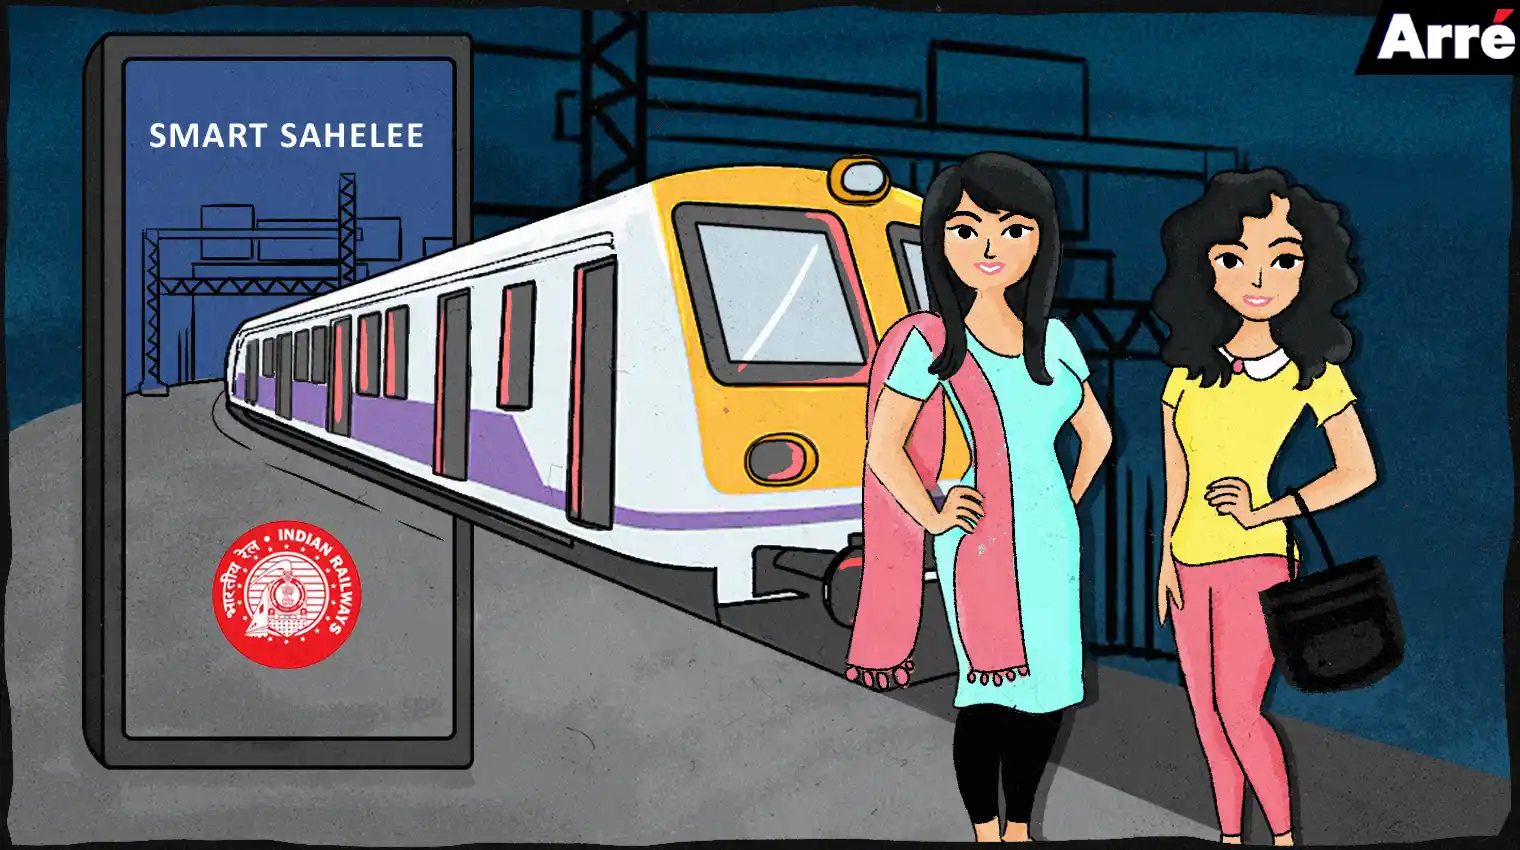 Smart Sahelee: Steps to Make Public Transport Safer for Indian Women